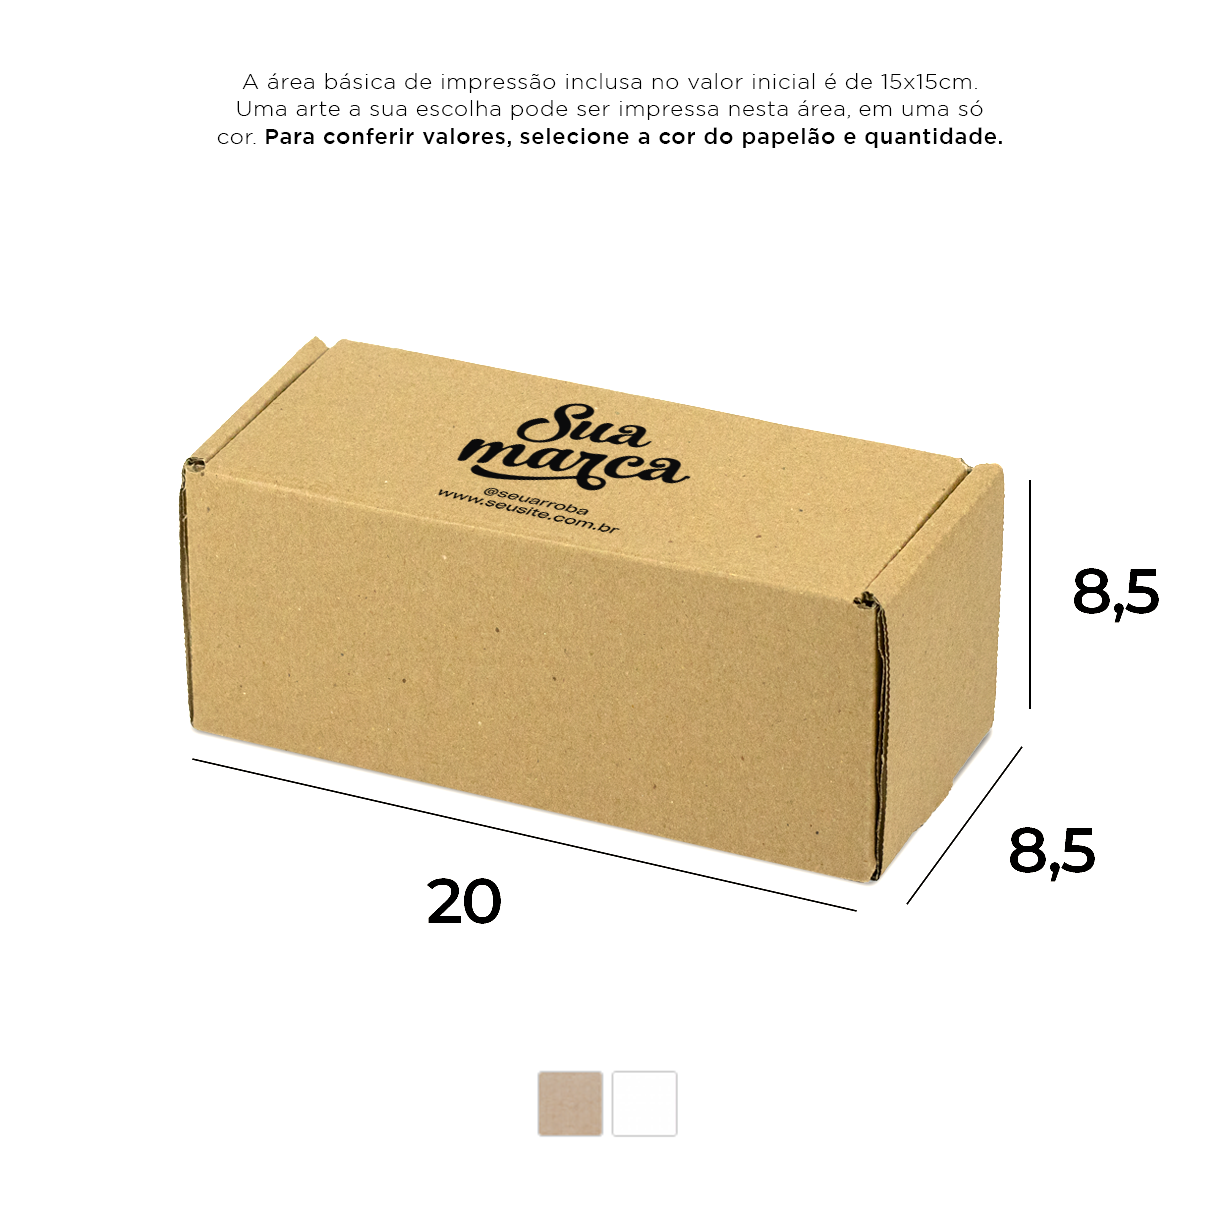 Caixa de Papelão Personalizada (20x8,5x8,5) Sedex 25